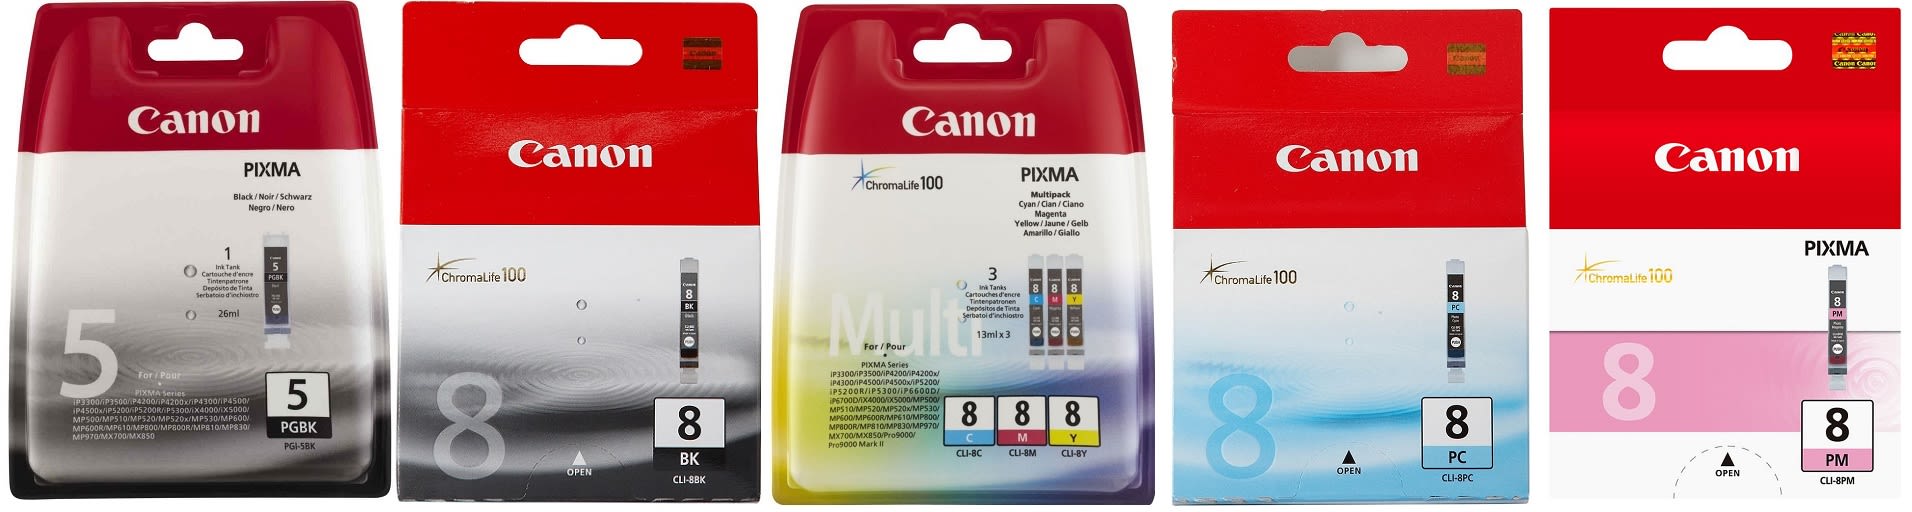 Картридж для Canon Pixma MP950 Купить комплект оригинальных чернил.